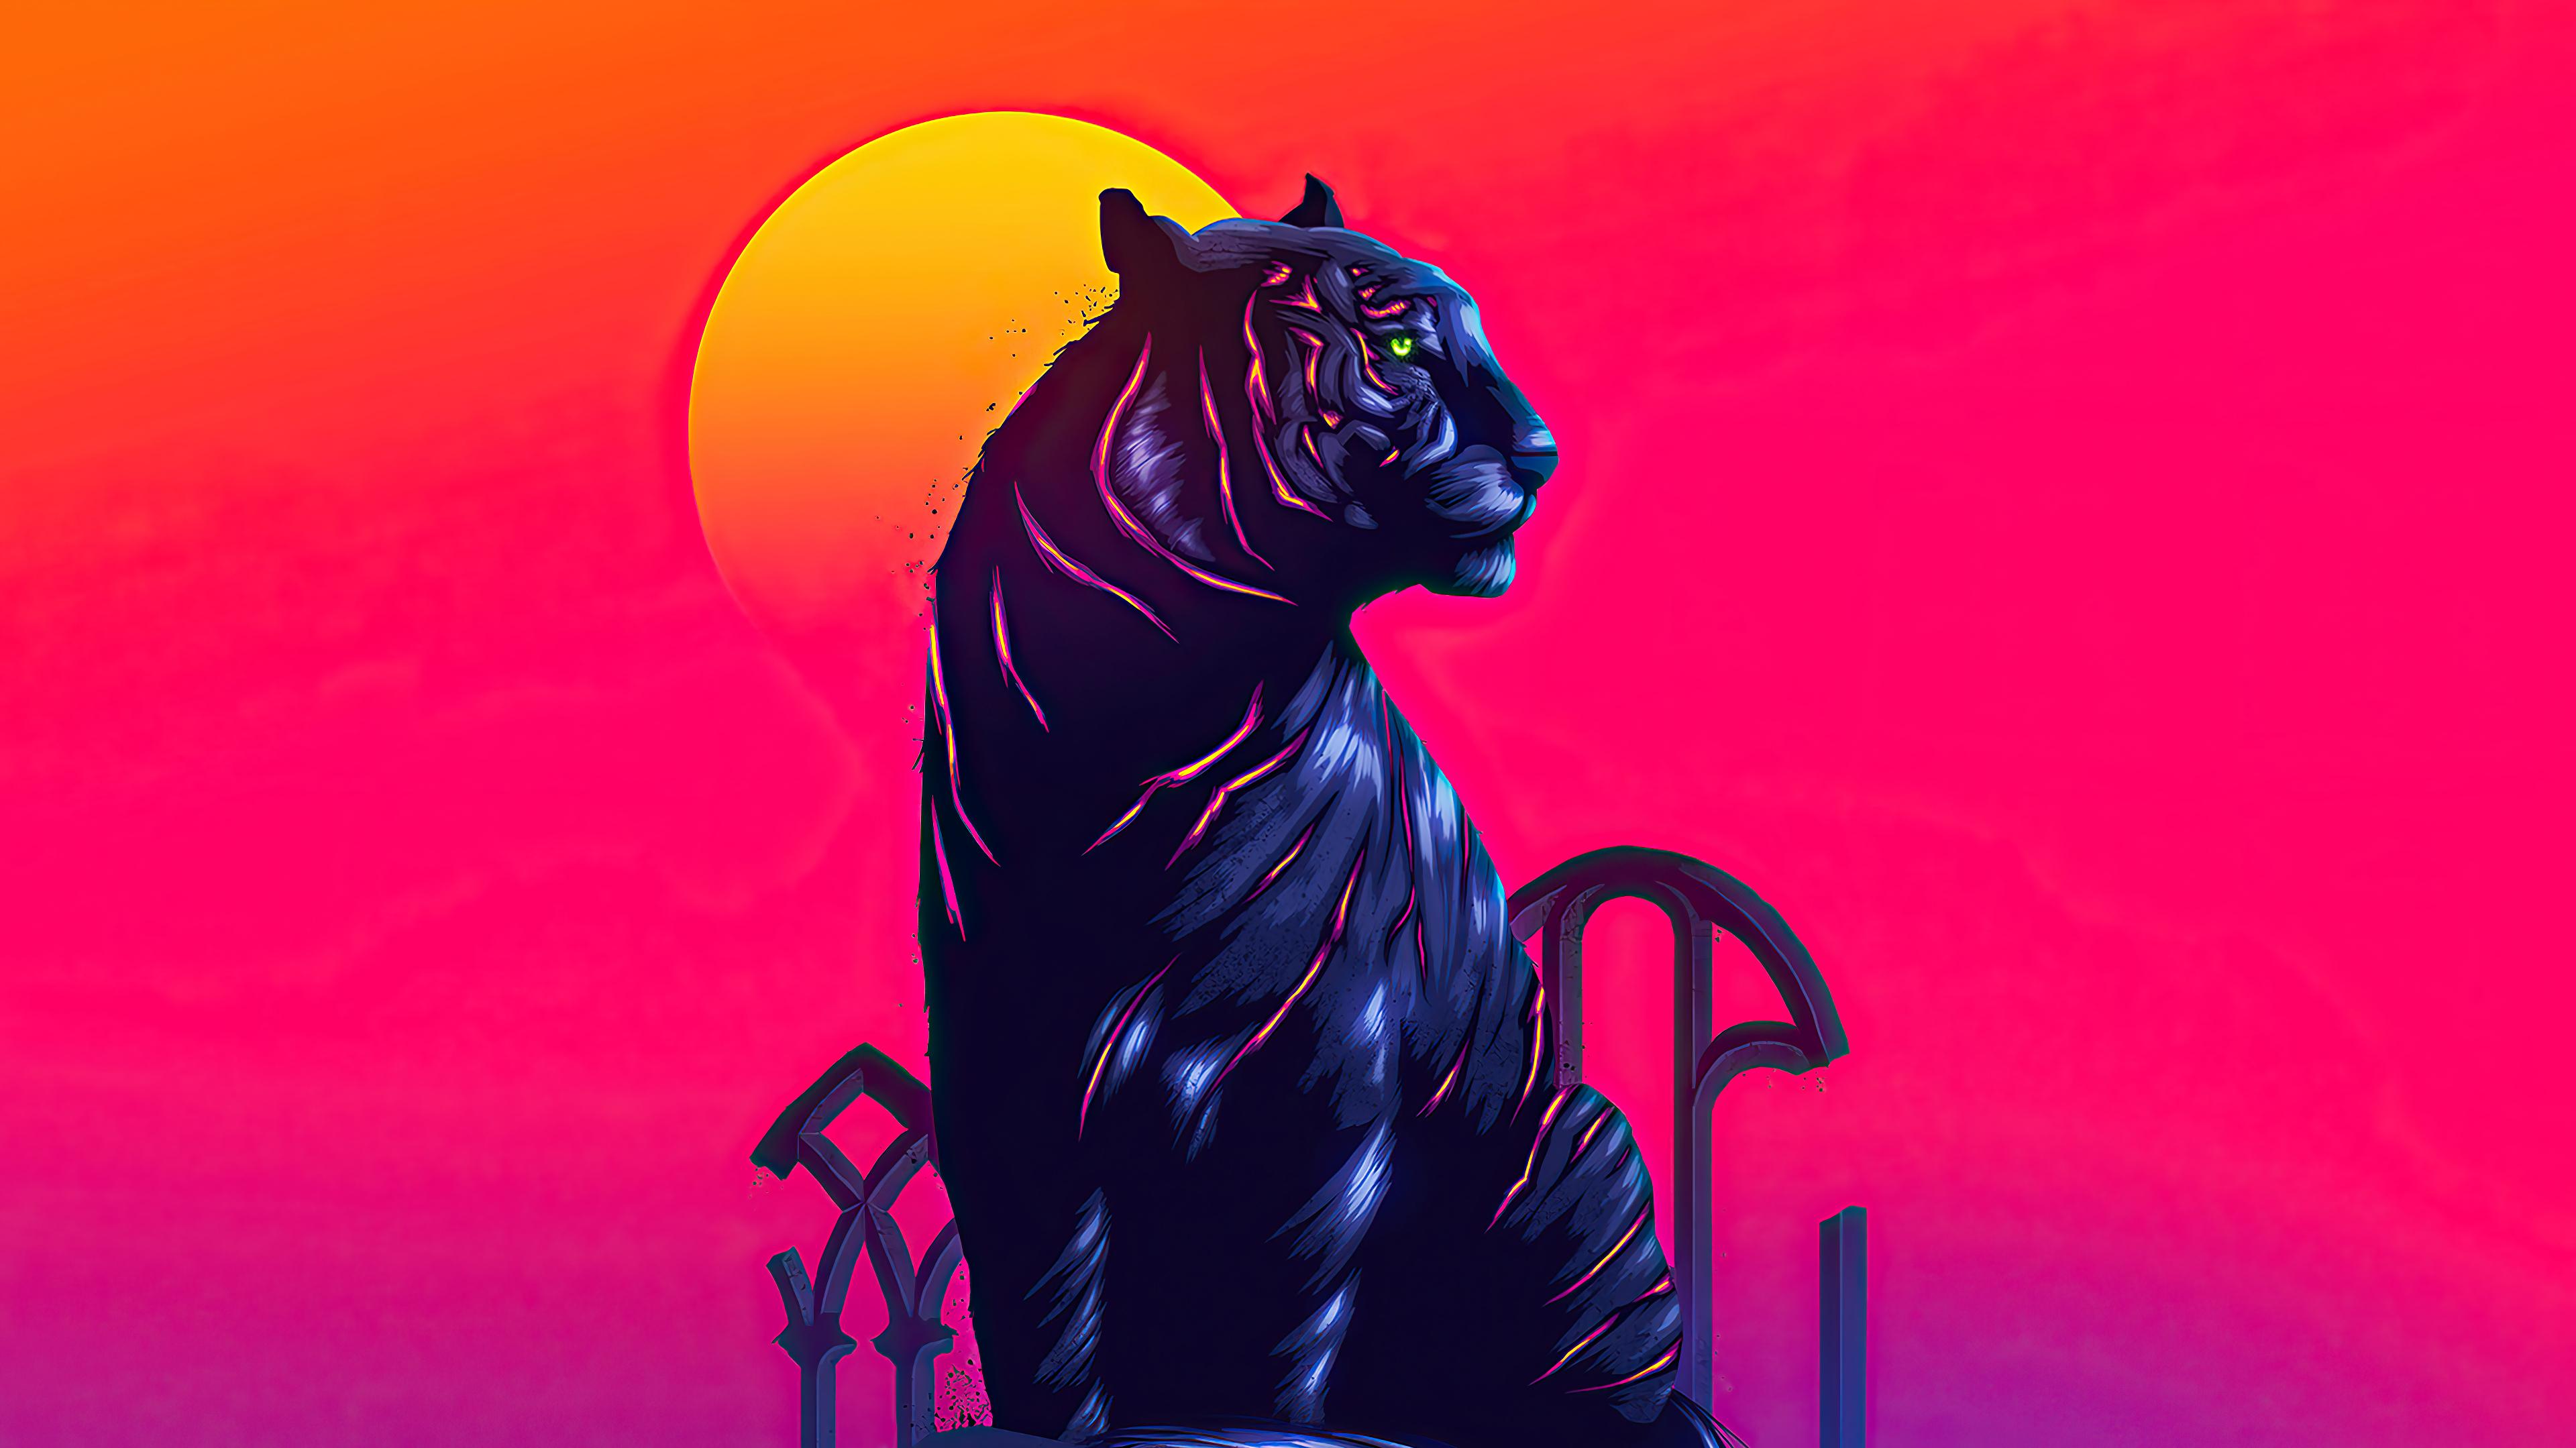 Tiger Digital Art 4k Wallpaper